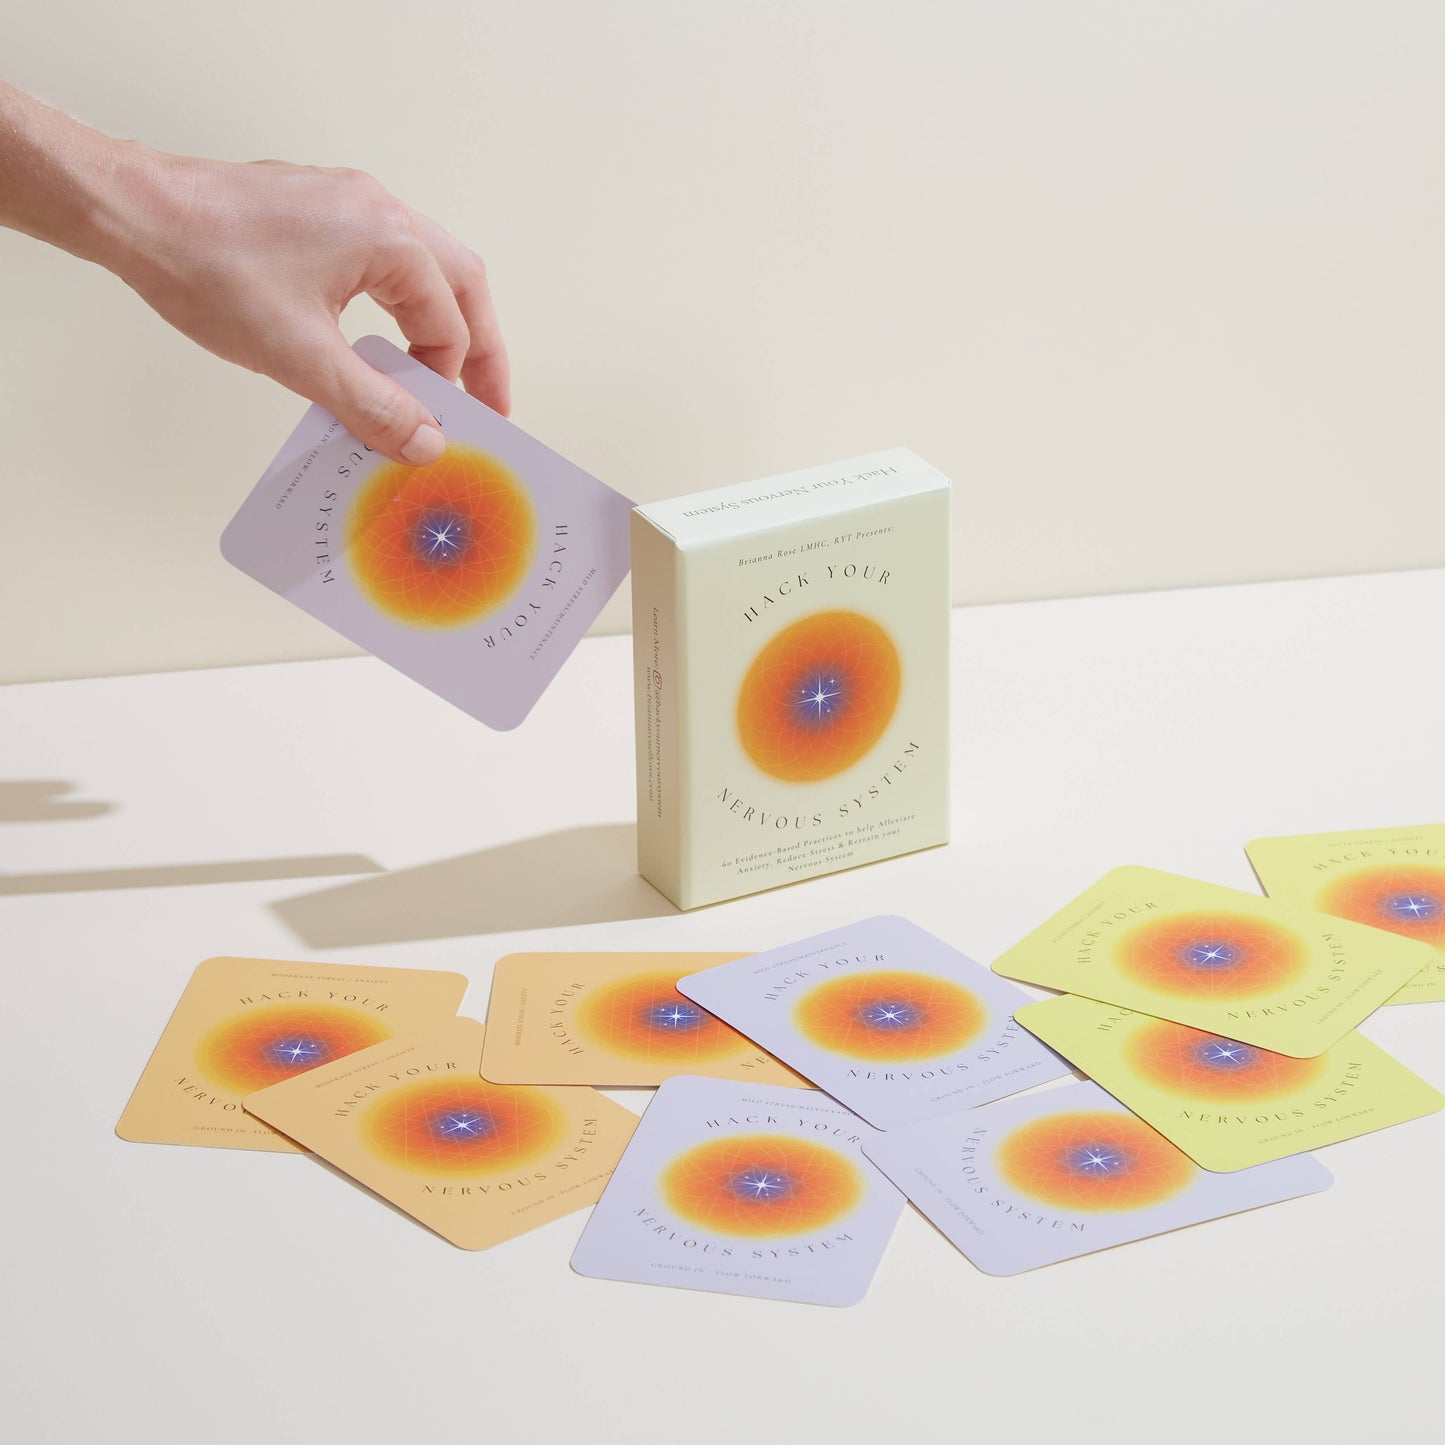 Cards: Hack Your Nervous System Card Deck